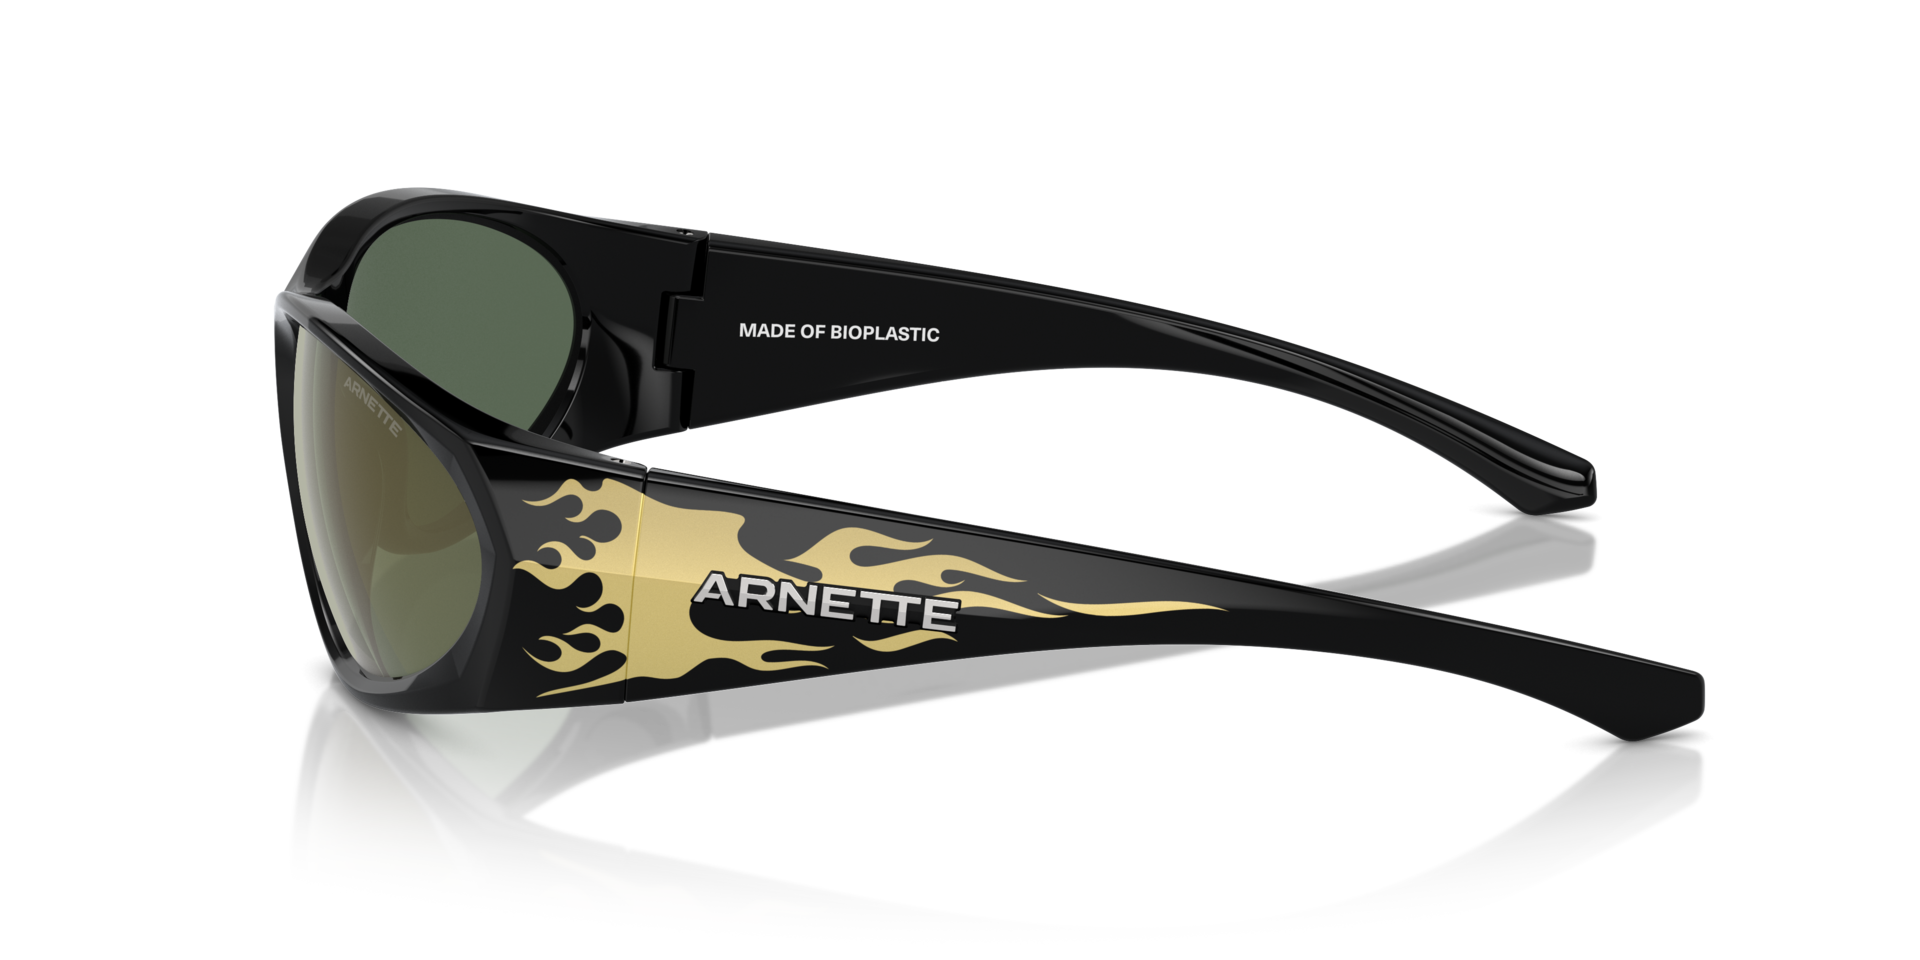 Das Bild zeigt die Sonnenbrille AN4342 29476R von der Marke Arnette in schwarz.